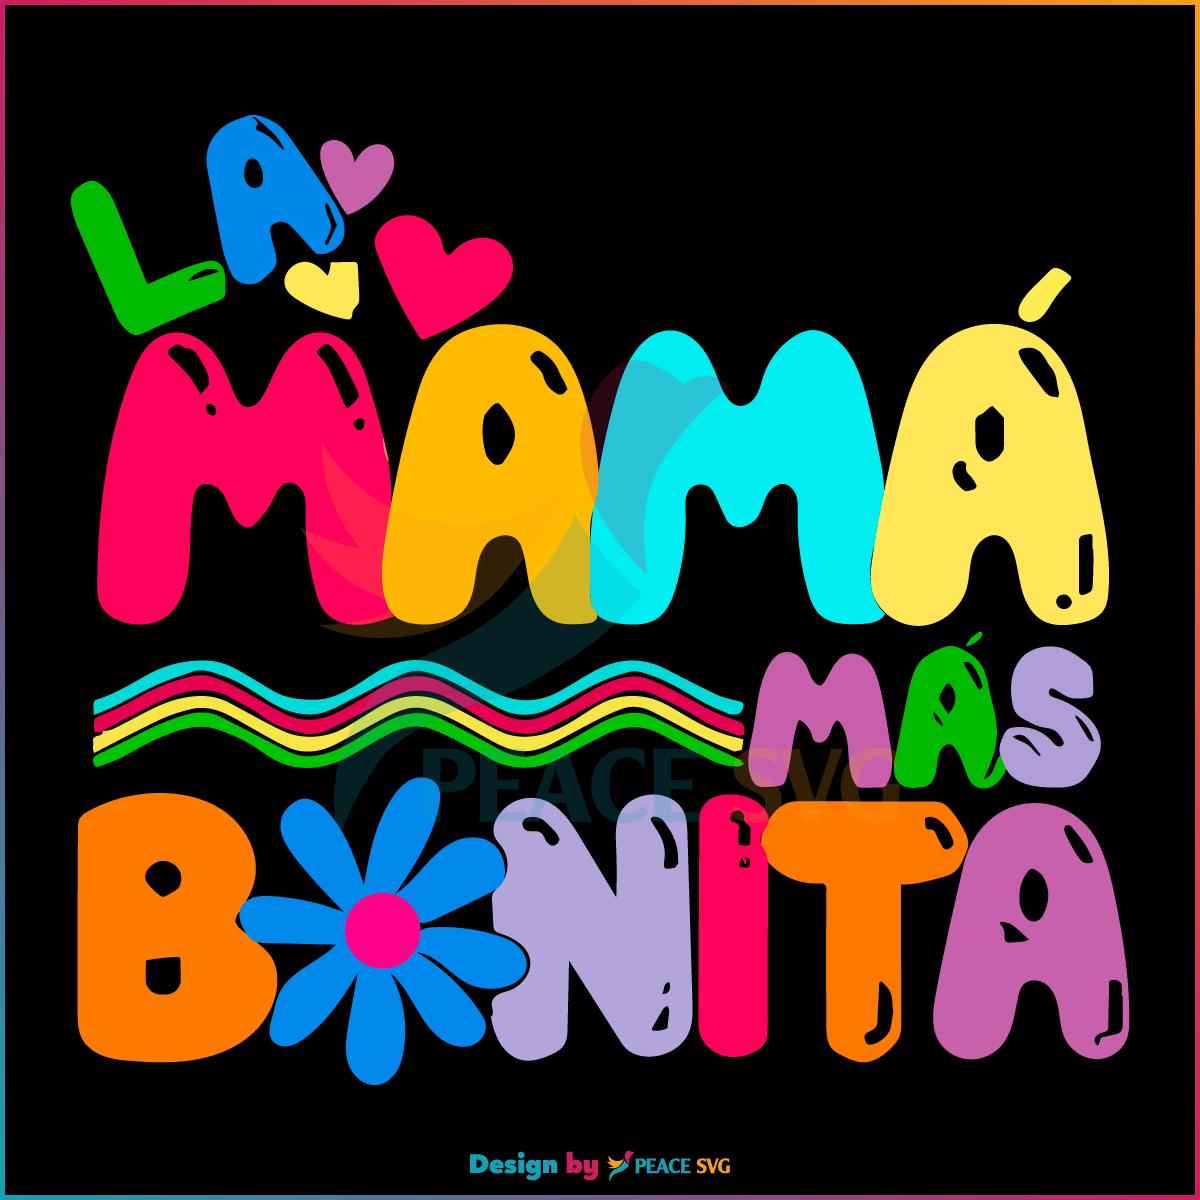 La Mama Mas Bonita Mañana será bonito Karol G SVG, Cutting Files